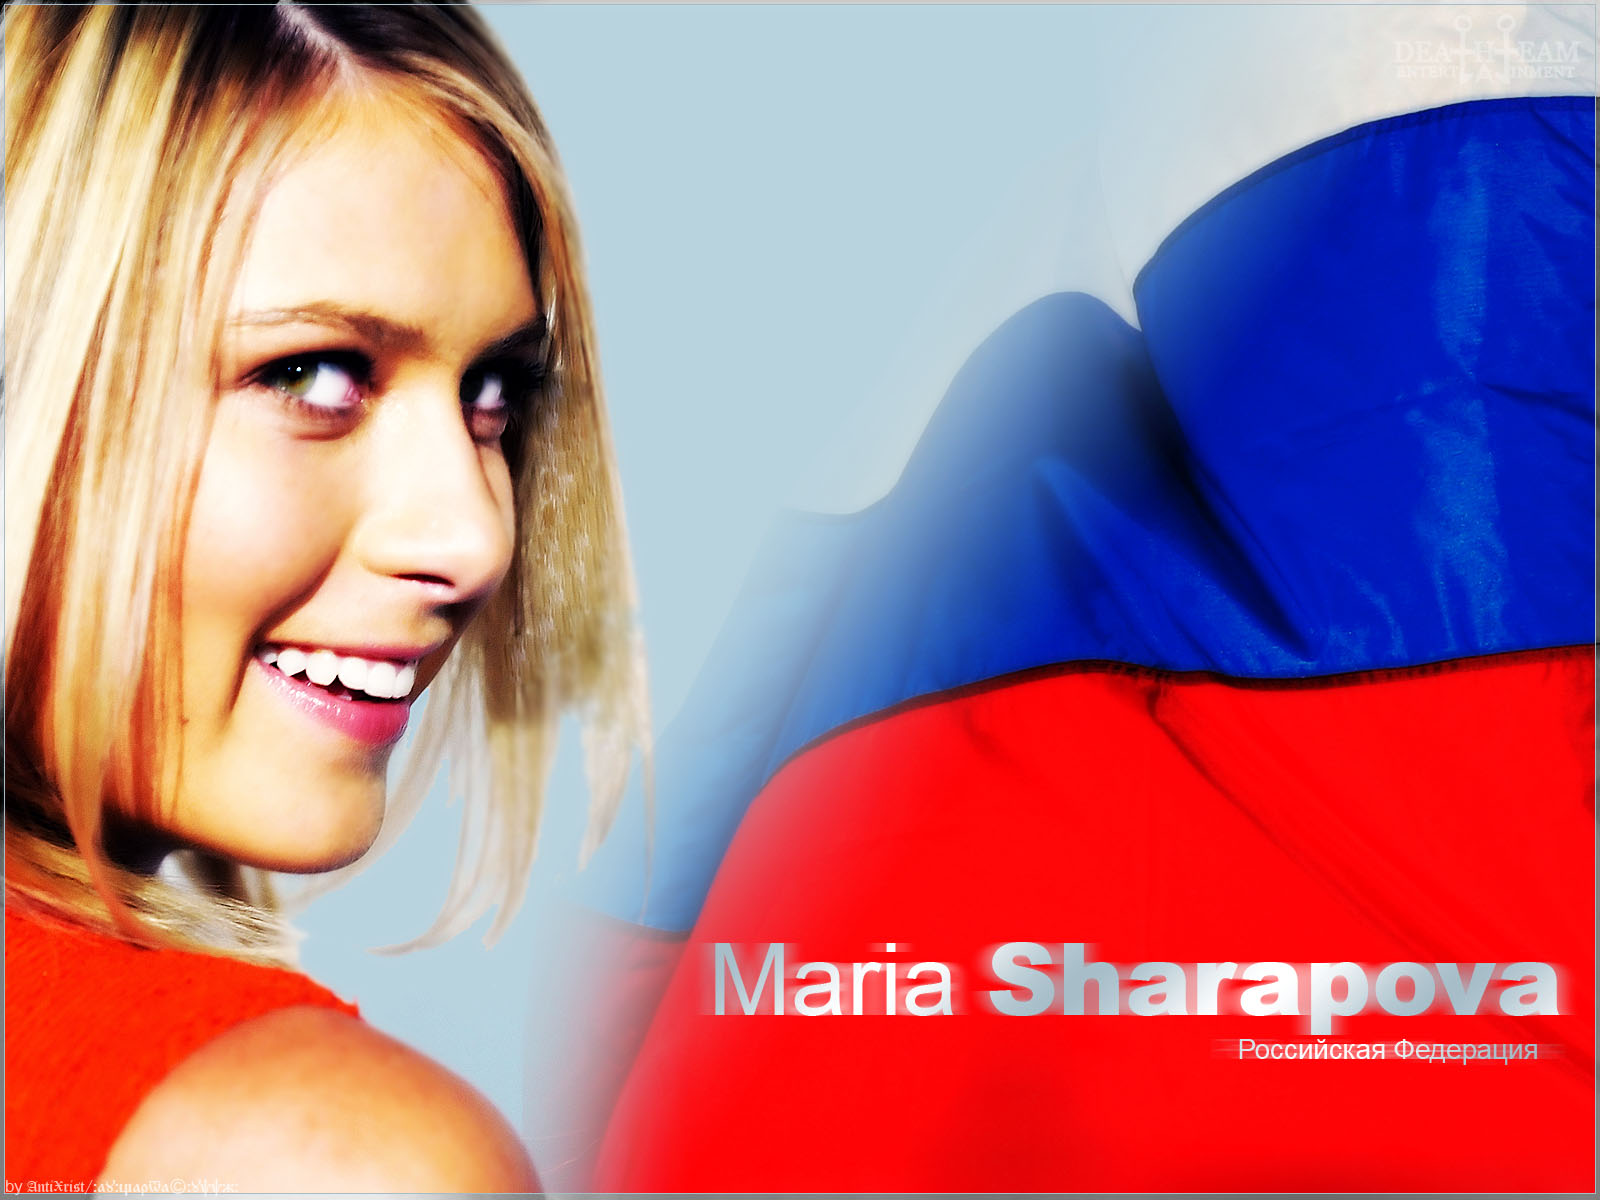 Sharapova Maria Media Background